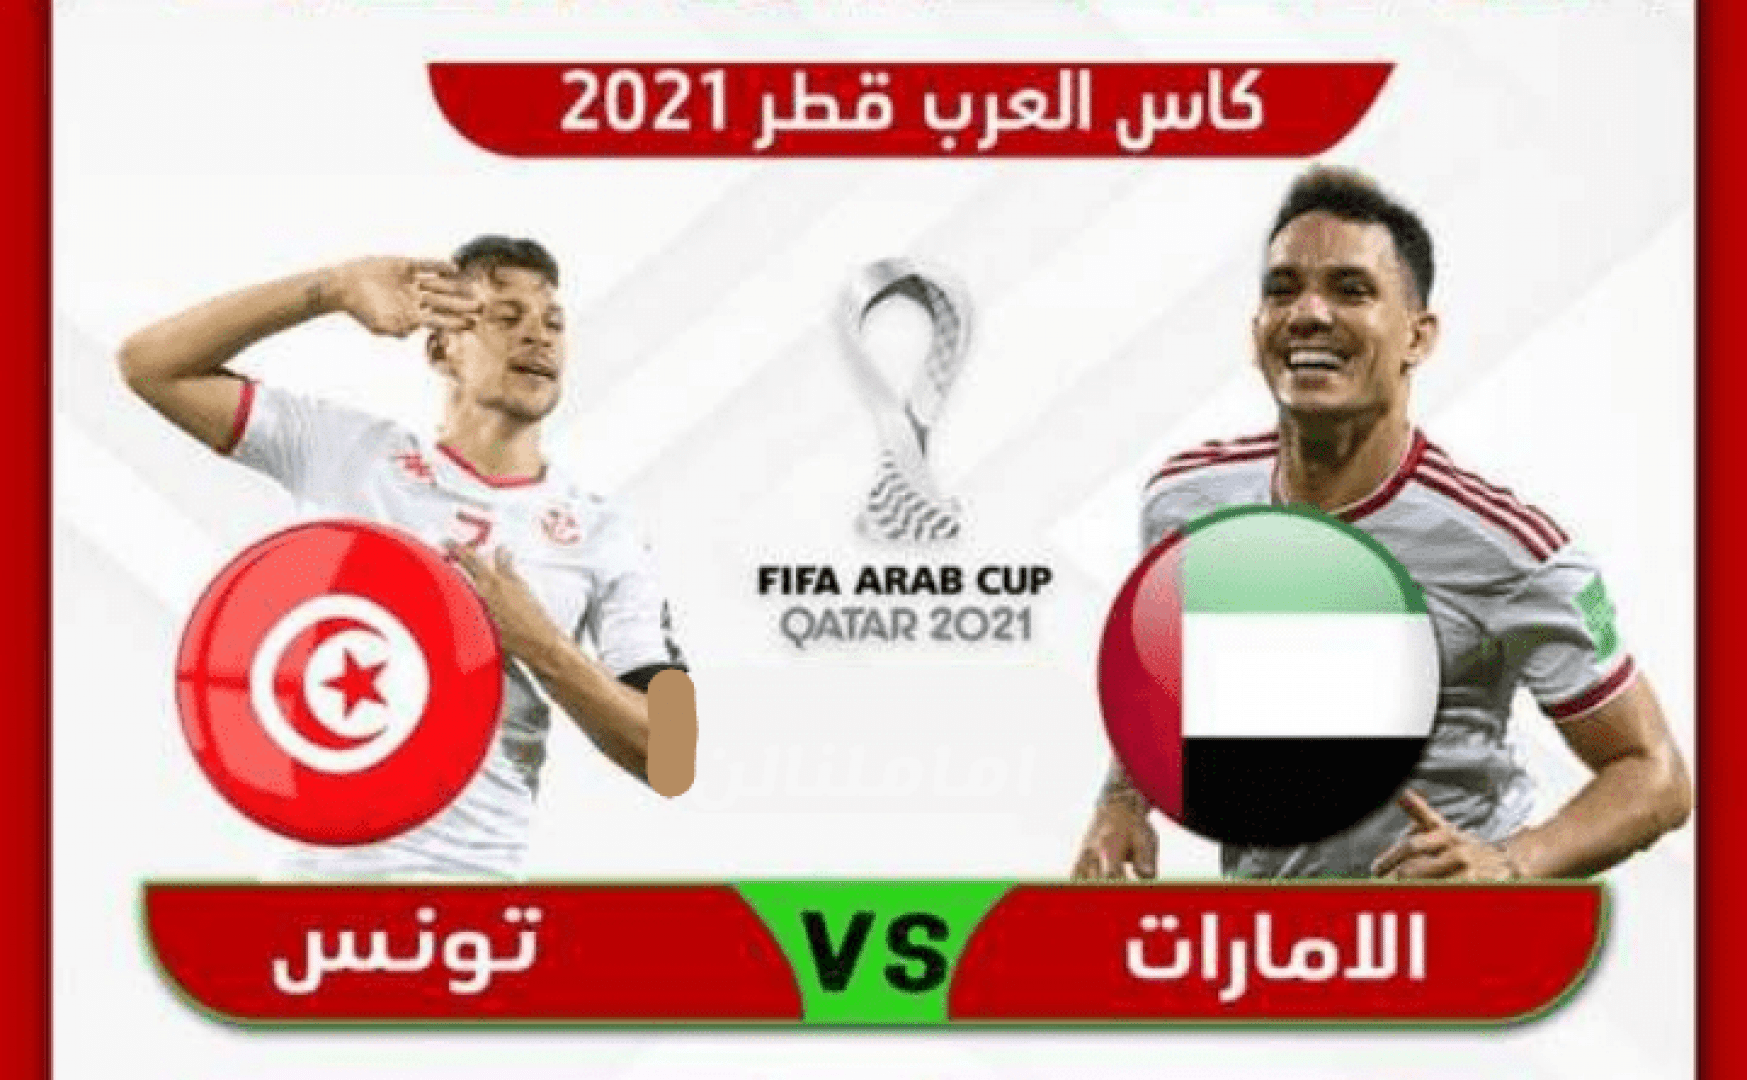 موعد وتردد القنوات الناقلة لمباراة تونس ضد الإمارات في كأس العرب 2021